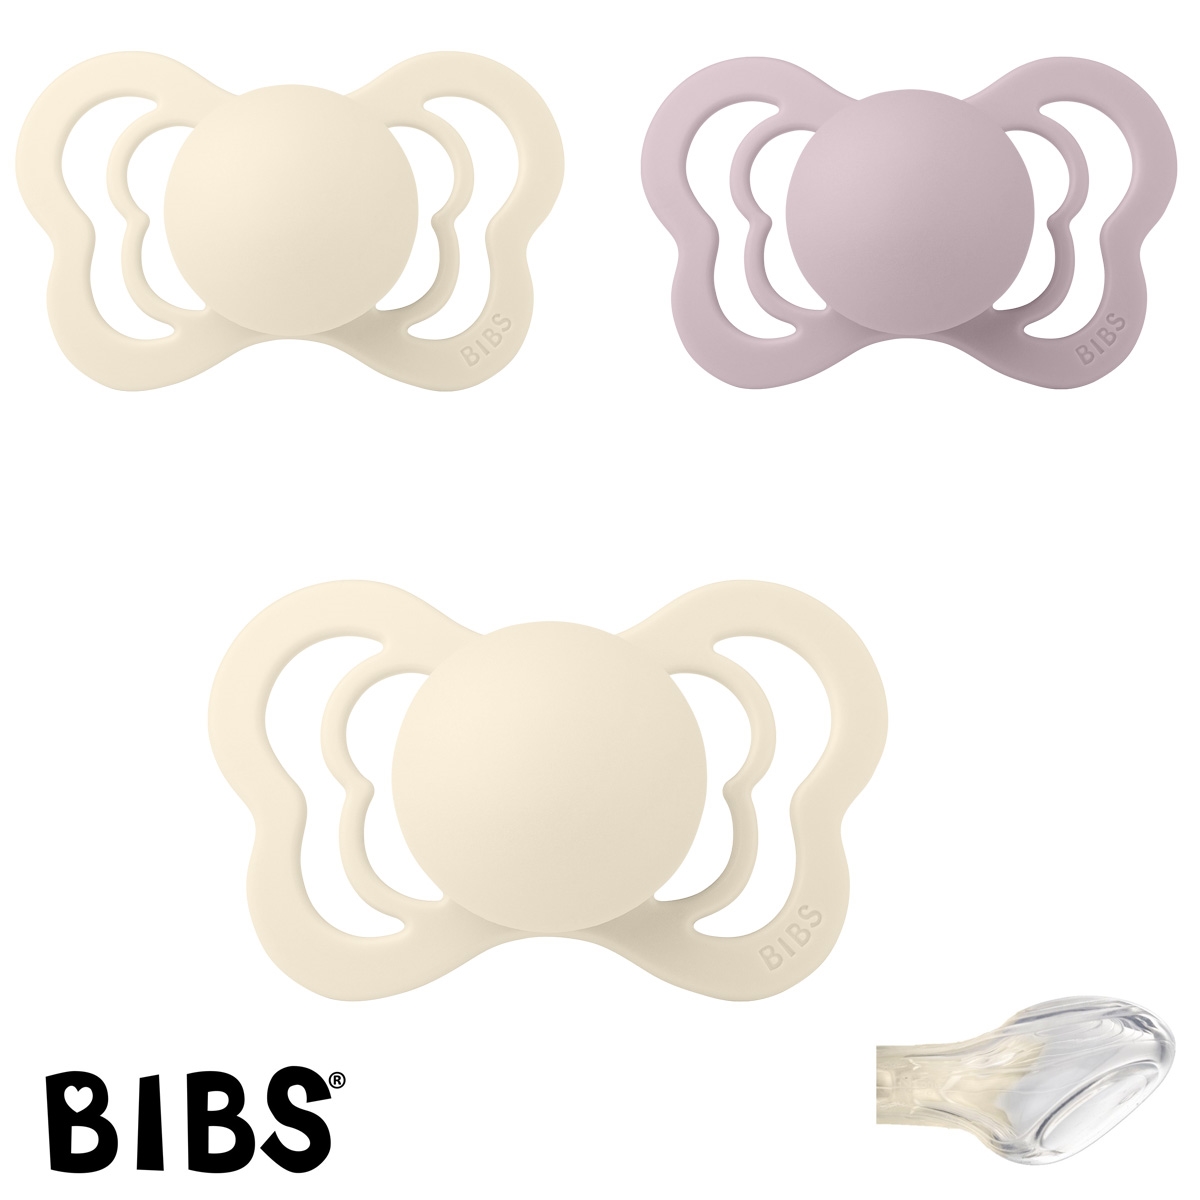 BIBS Couture Sutter med navn str2, 2 Ivory, 1 Dusky Lilac, Anatomisk Silikone, Pakke med 3 sutter